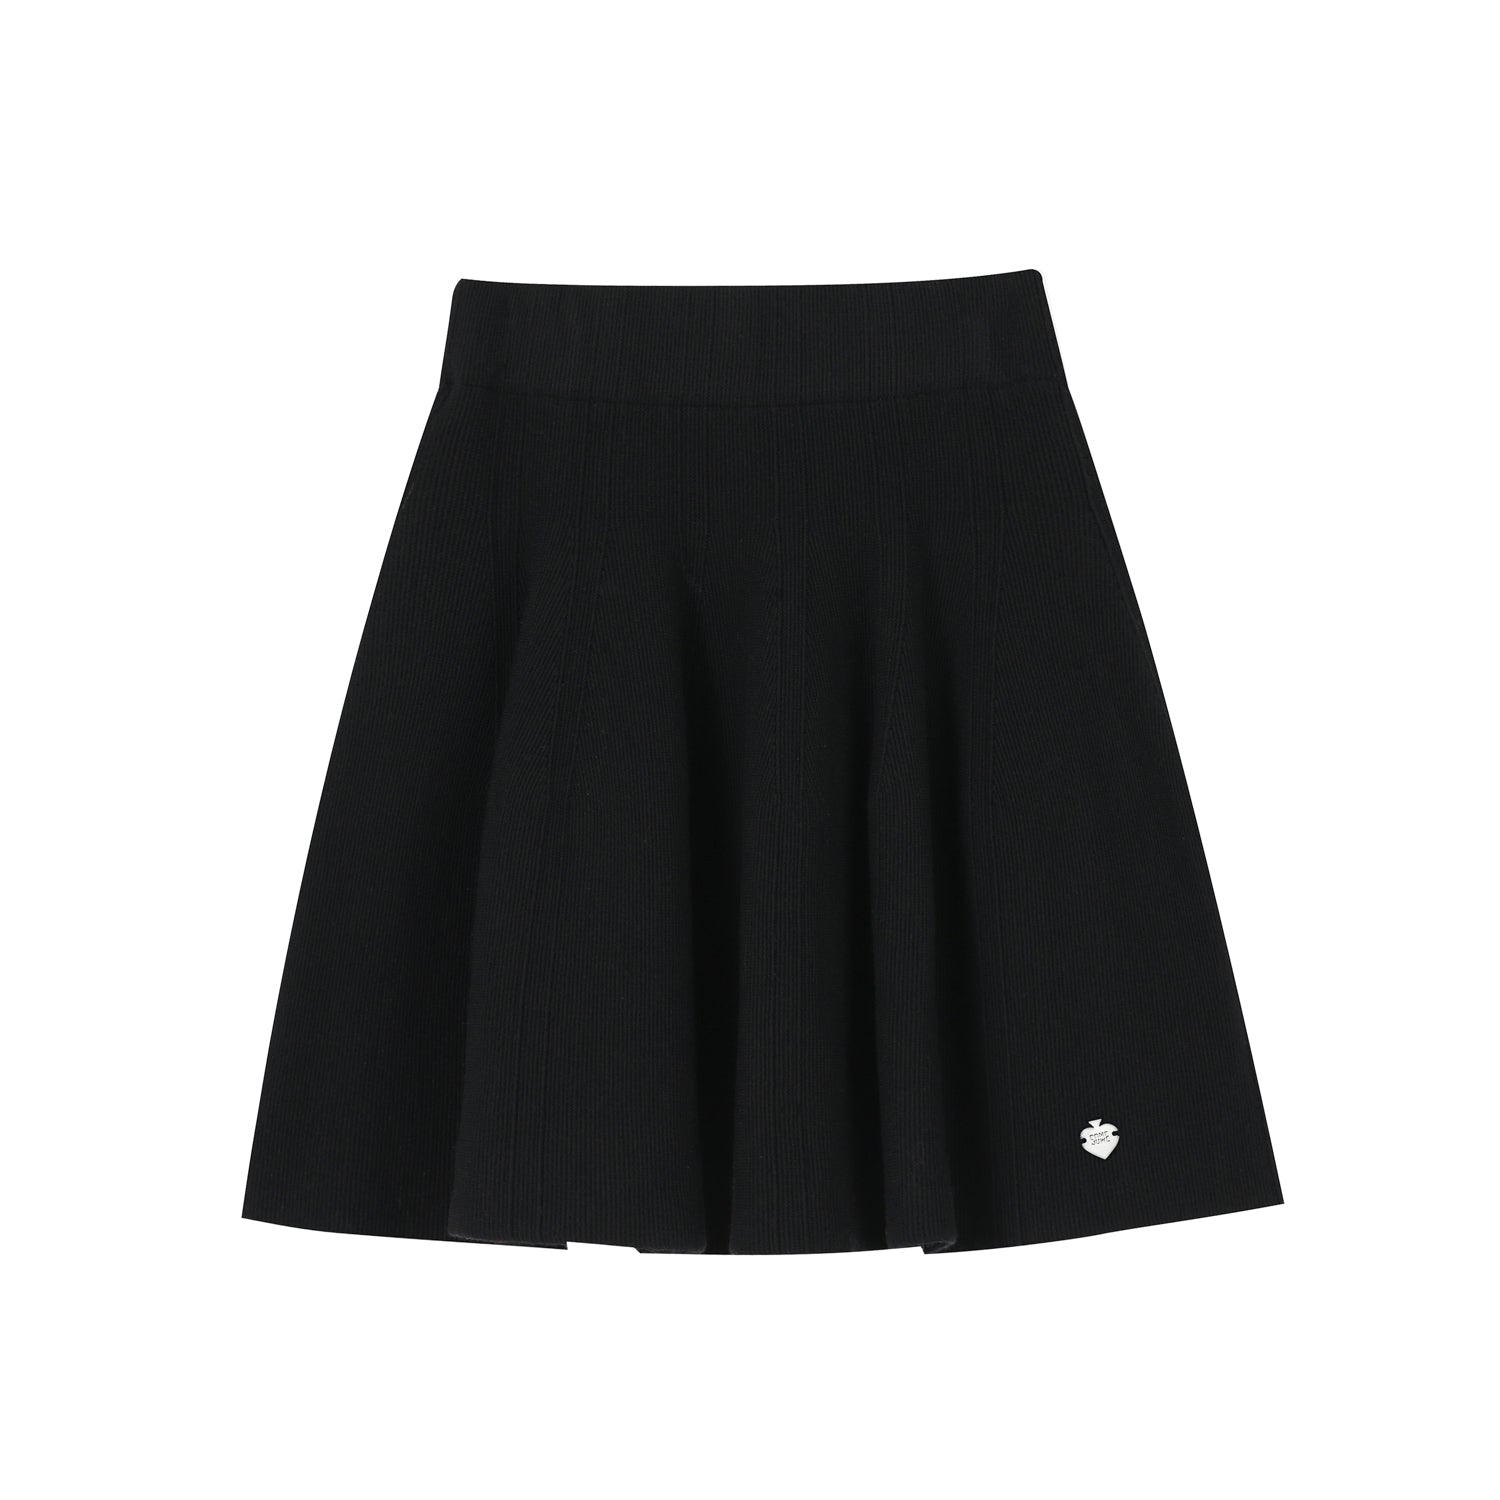 SOMESOWE Black Umbrella Shape Skirt | MADA IN CHINA